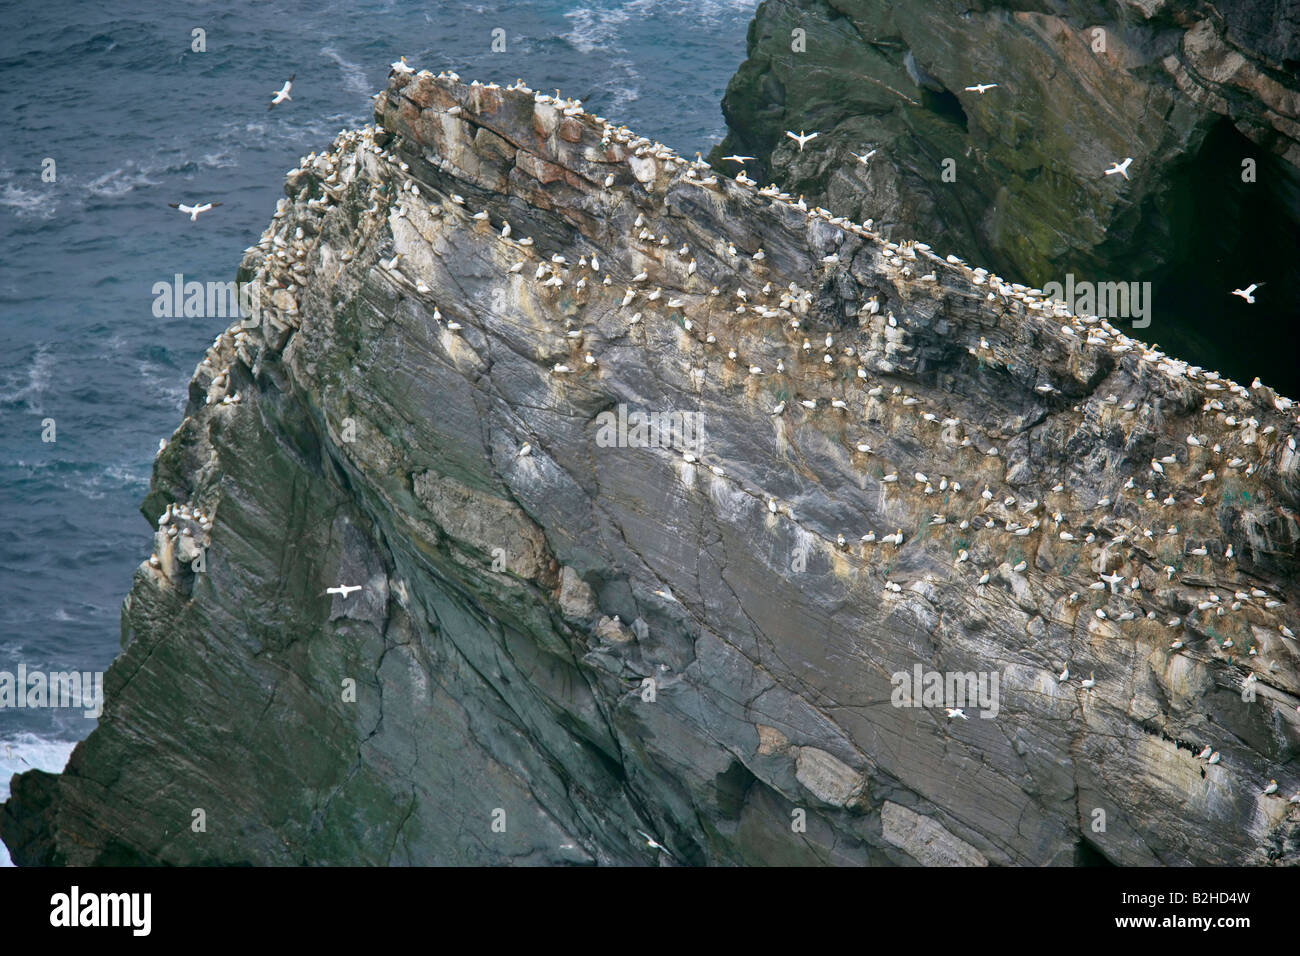 Gannetry Sula bassana Bassan nicheurs sur roche exposée vu de dessus la Réserve Naturelle Hermaness Unst Shetland Isles Scotland UK Banque D'Images